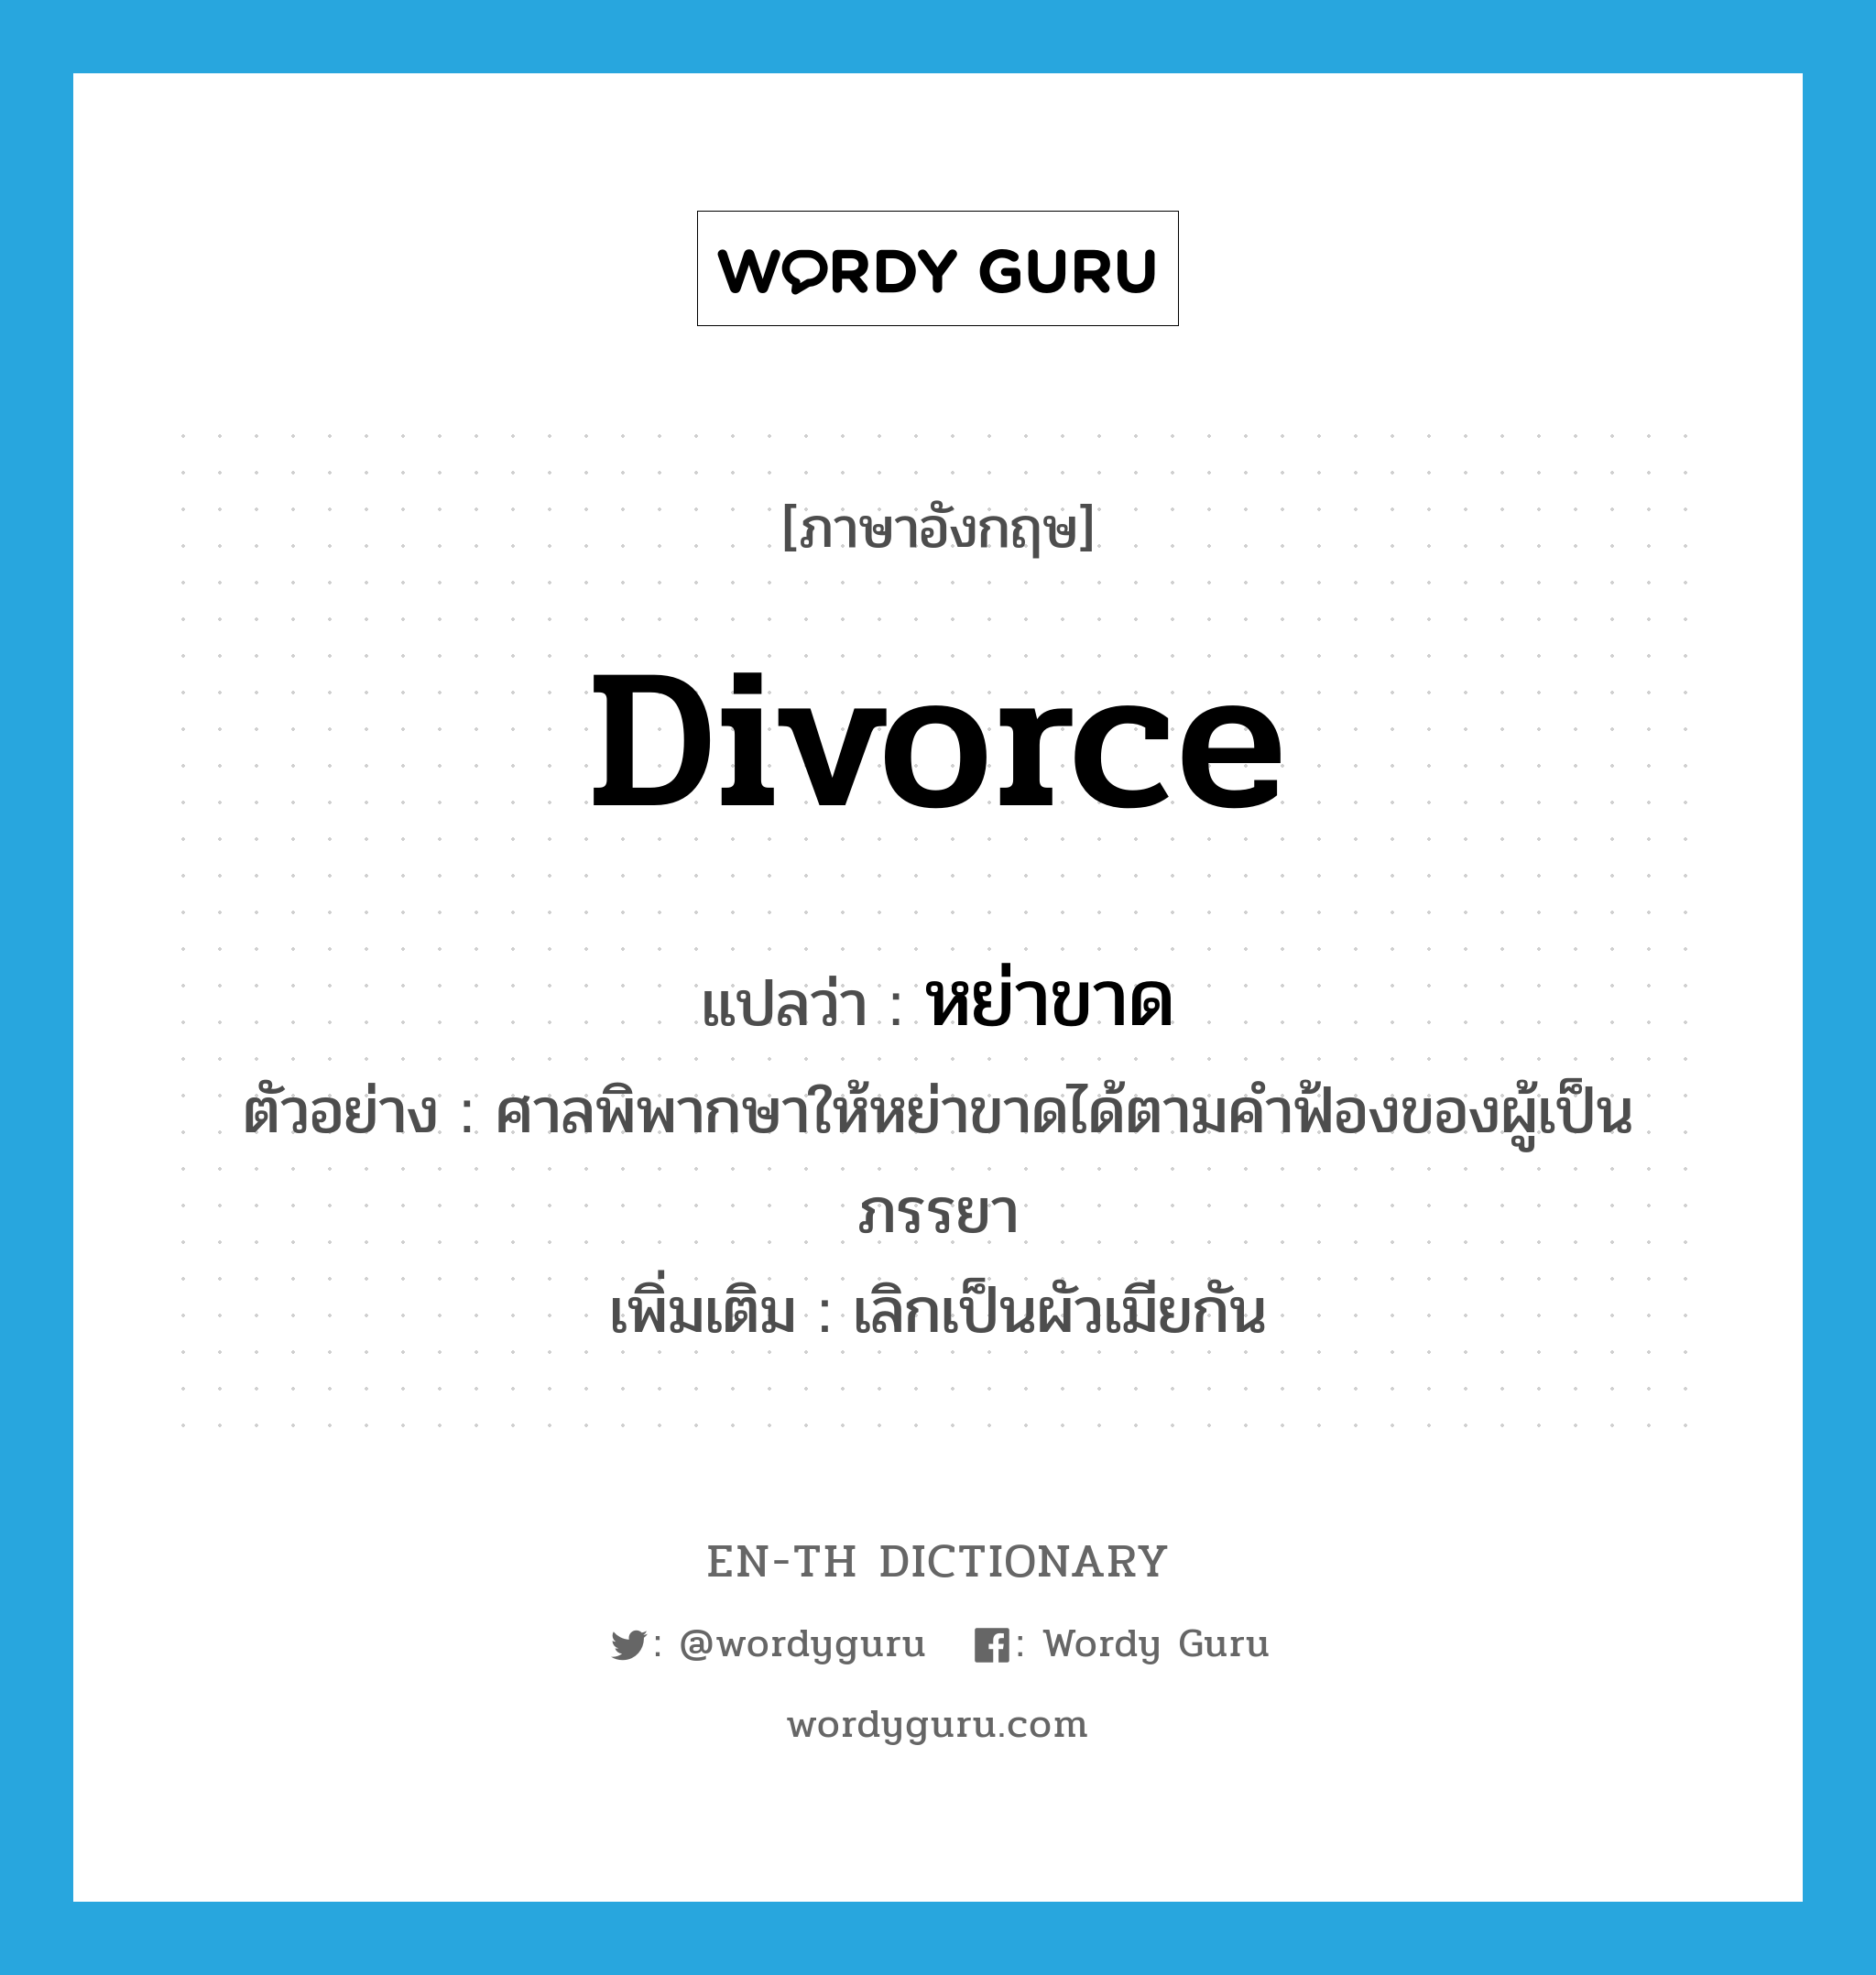 divorce แปลว่า?, คำศัพท์ภาษาอังกฤษ divorce แปลว่า หย่าขาด ประเภท V ตัวอย่าง ศาลพิพากษาให้หย่าขาดได้ตามคำฟ้องของผู้เป็นภรรยา เพิ่มเติม เลิกเป็นผัวเมียกัน หมวด V